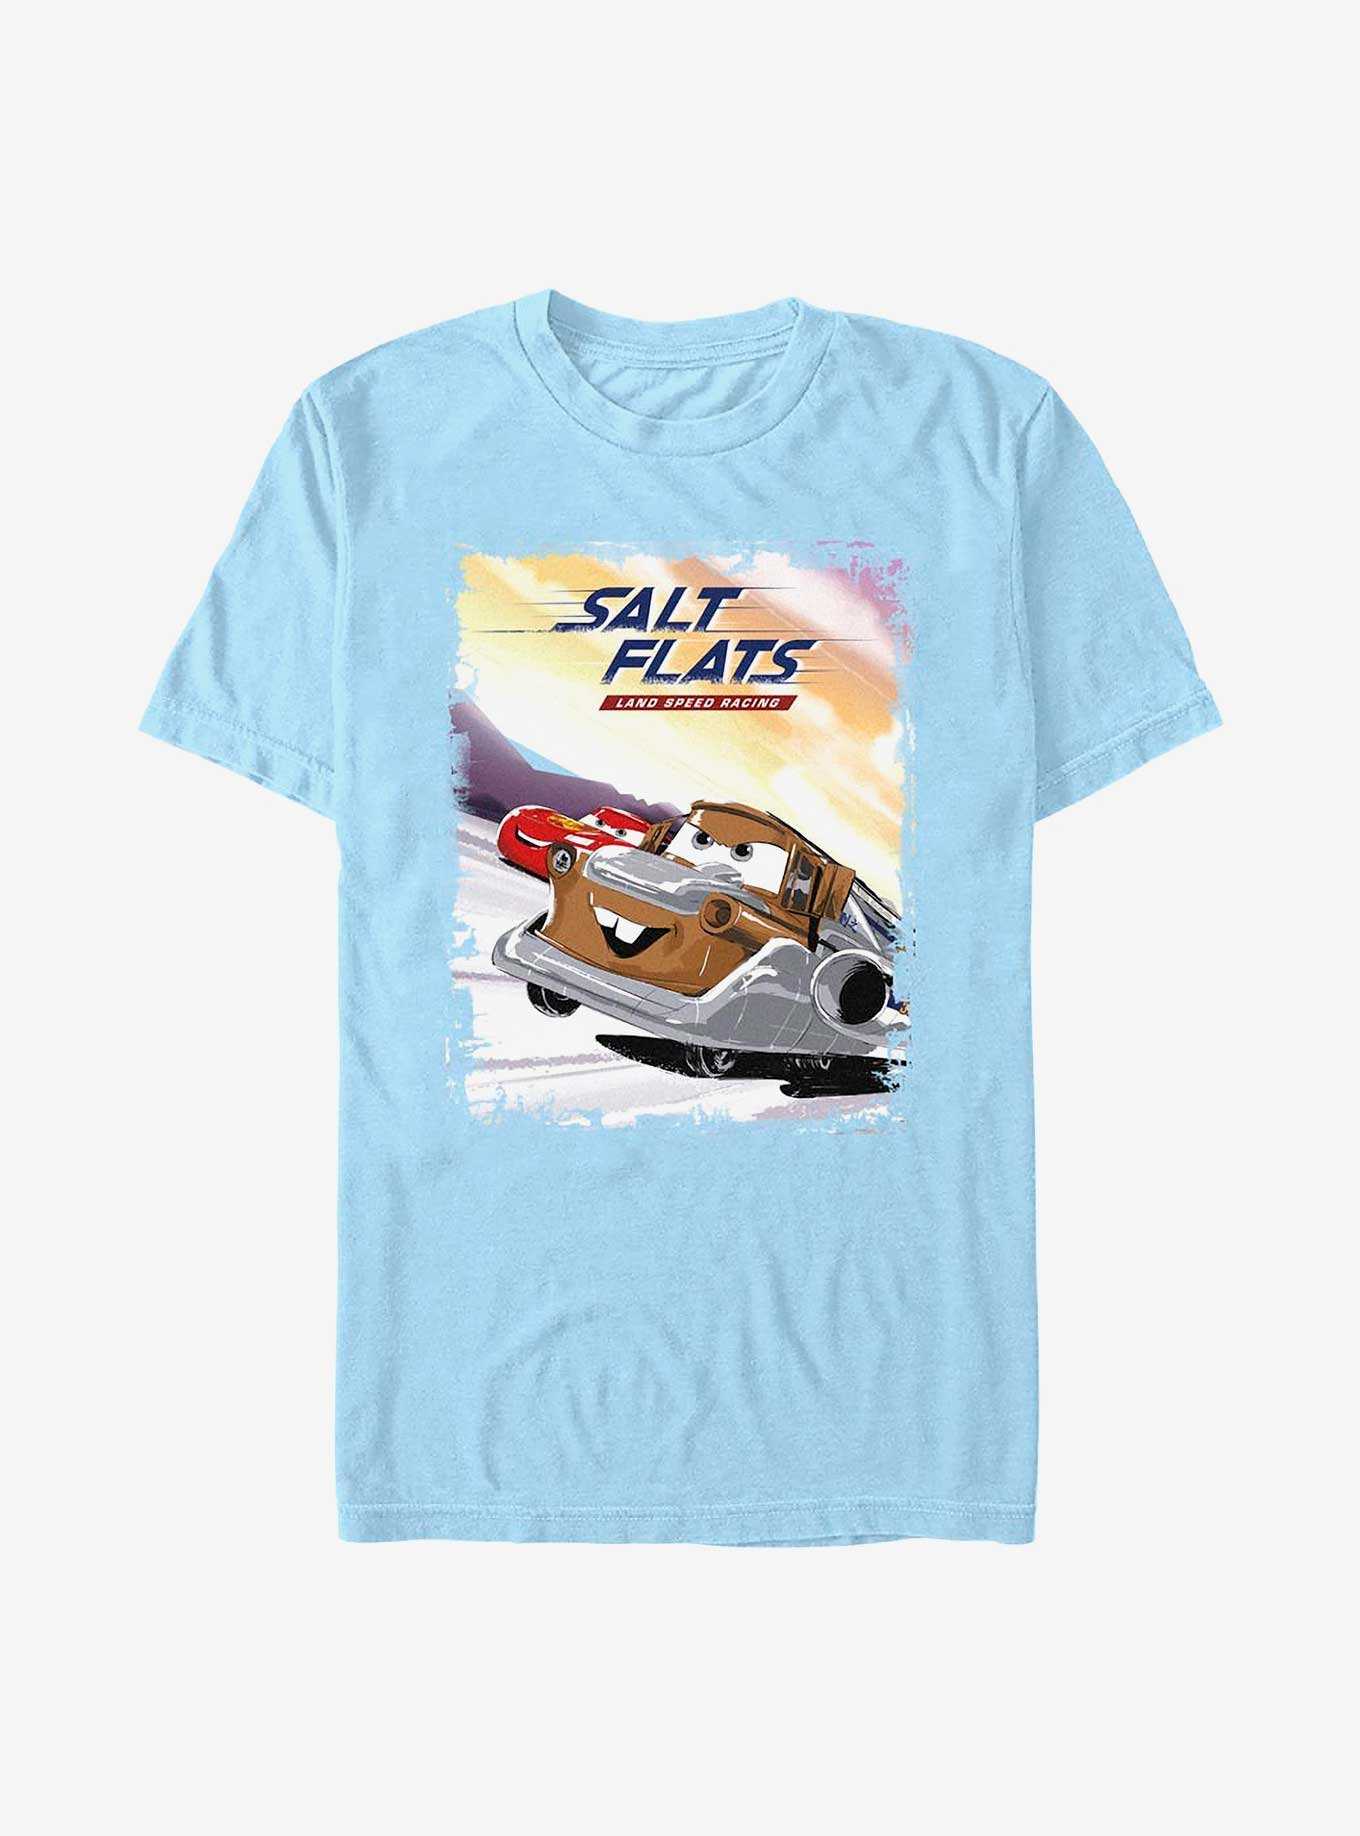 Disney Pixar Cars Salt Flats Land Speed Racing T-Shirt, , hi-res